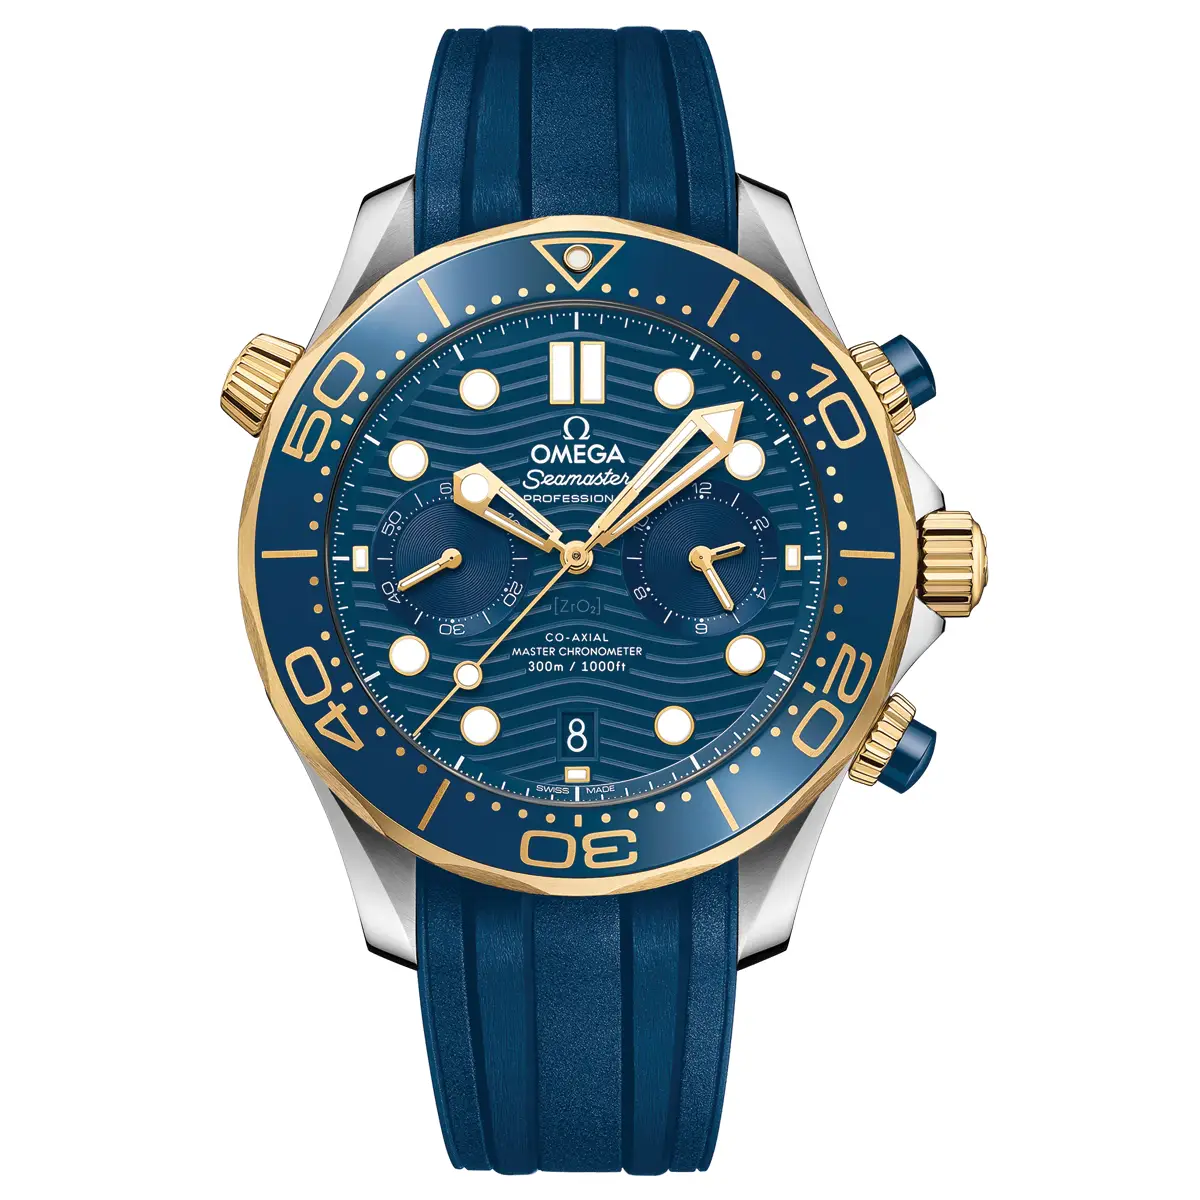 Đồng hồ Omega Seamaster Diver Chronometer Chronograph 210.22.44.51.03.001 mặt số màu xanh. Dây đeo bằng cao su. Thân vỏ bằng thép demi yellow gold.